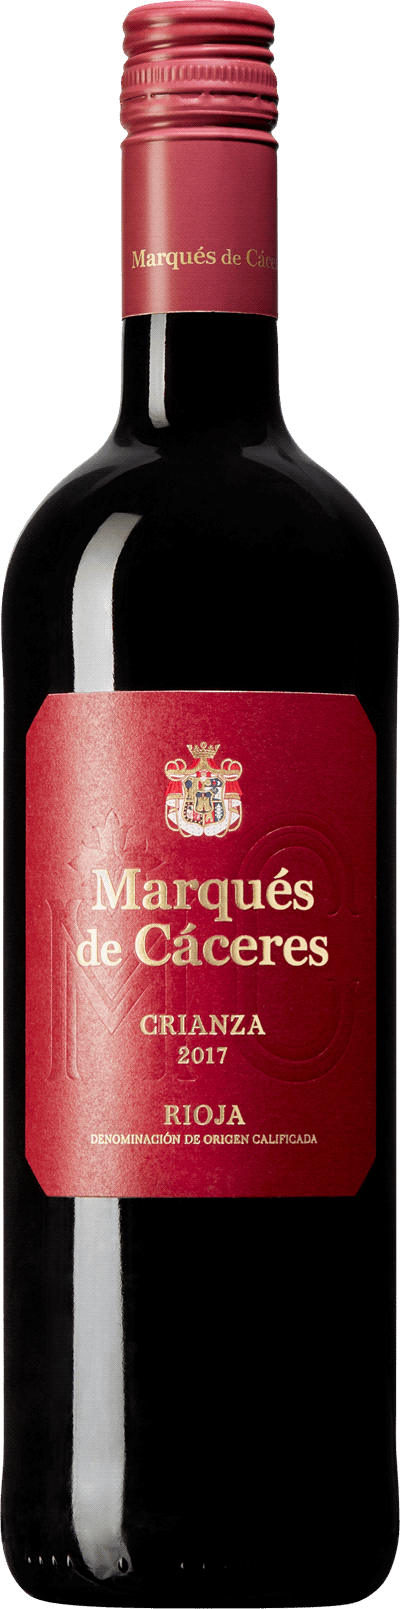 Marqués de Cáceres Crianza, 2017